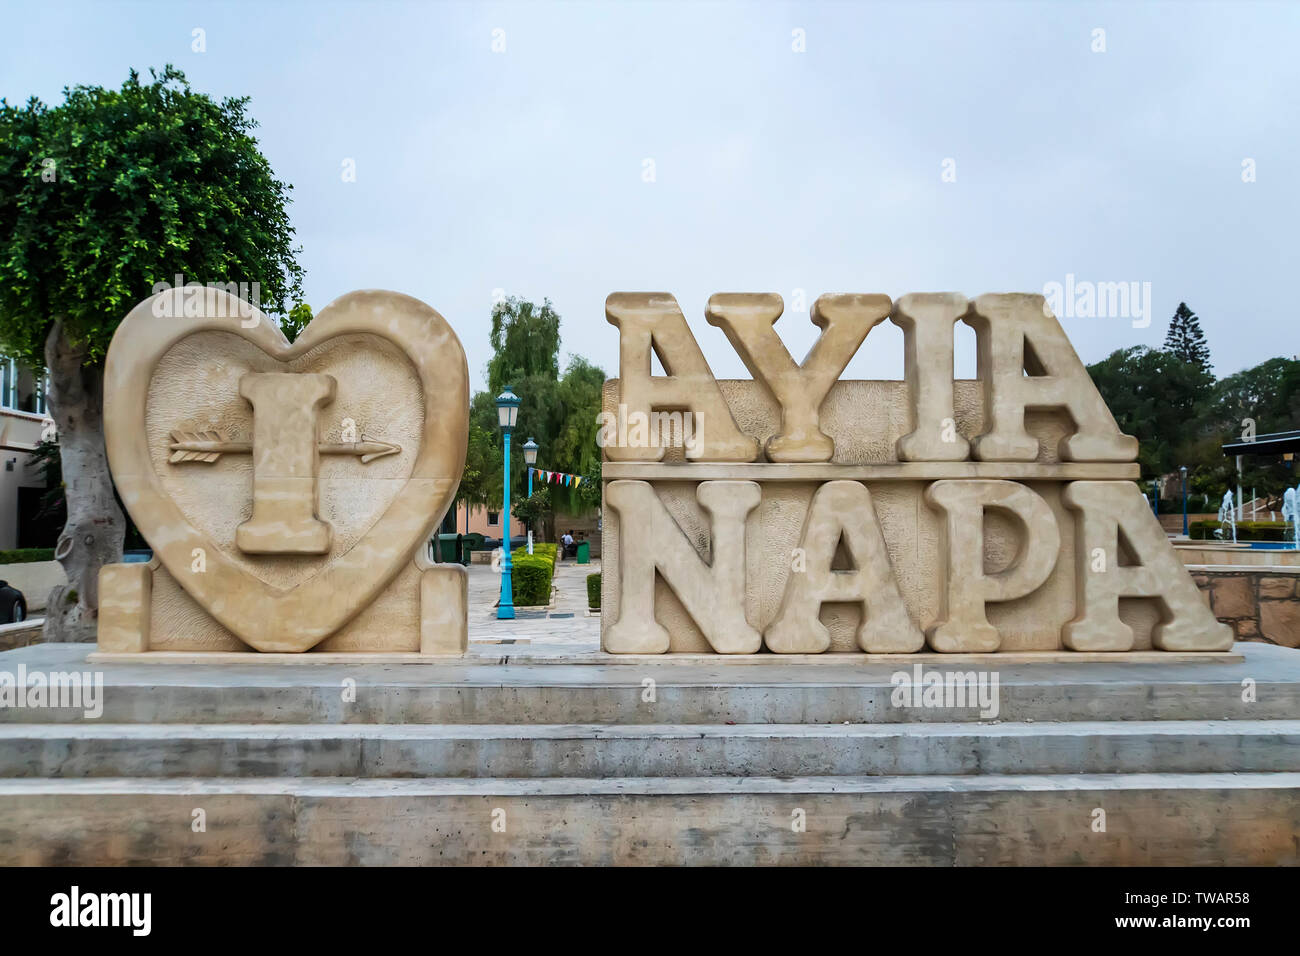 Oktober 20, 2019. Ayia Napa, Zypern. Der Name der Stadt aus Stein auf der Straße von den Ferienort Ayia Napa. Stockfoto